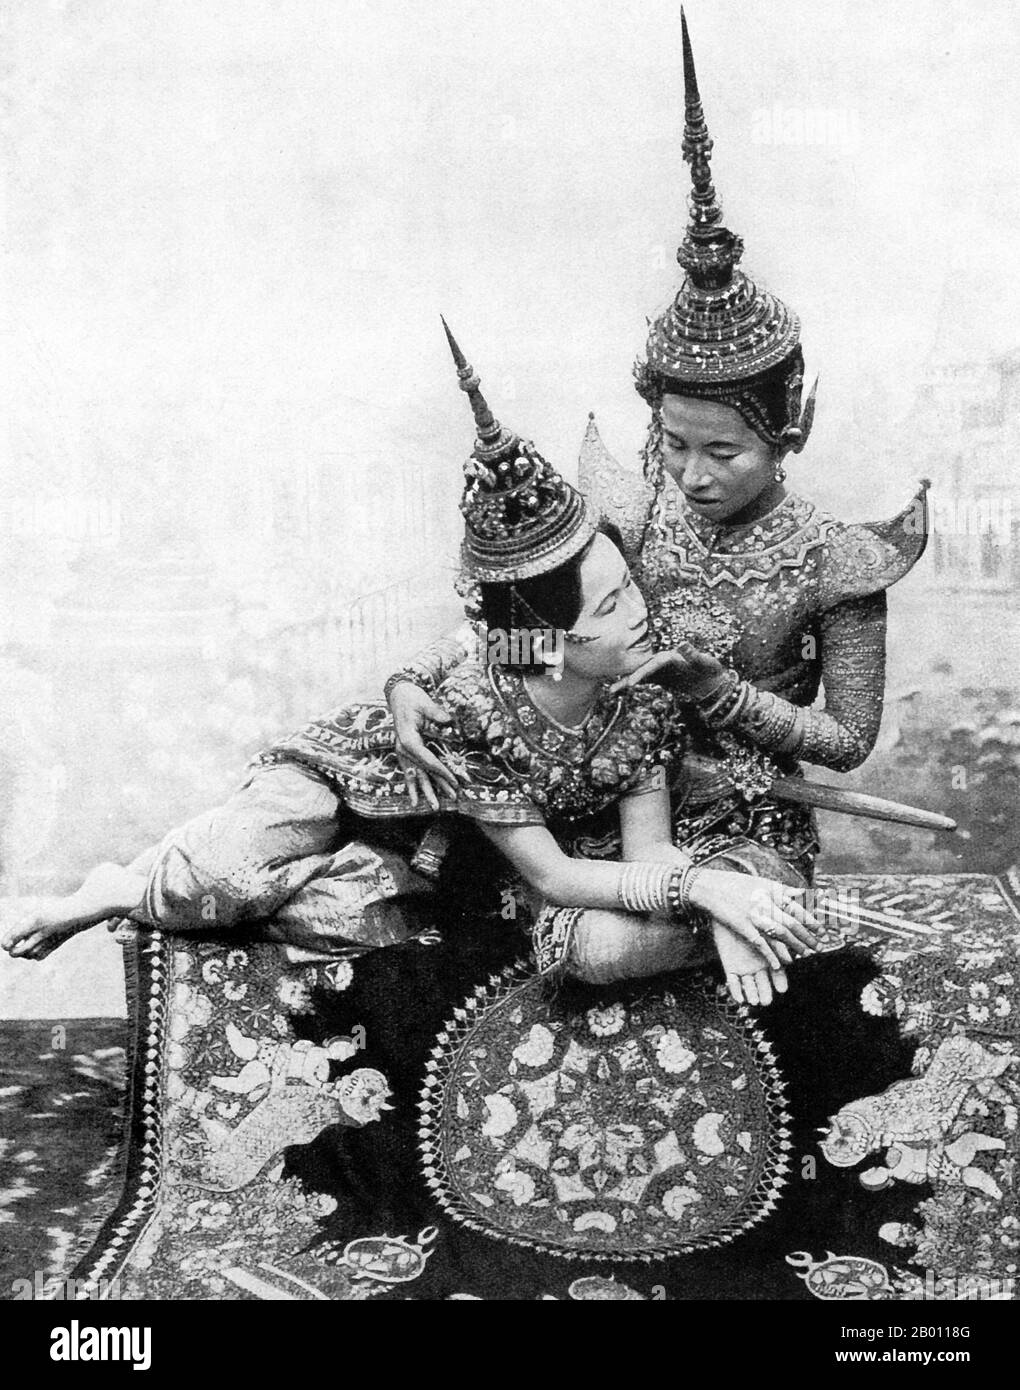 Thailand: Zwei Theaterschauspieler spielen eine Liebesszene aus einem siamesischen Drama, c. 1900. Die Siamesen waren an der Wende des 20. Jahrhunderts begeisterte Theaterbesucher. MIME, Tanz, Theaterstücke und Schattenpuppen waren alle sehr beliebt. Viele der Bühnenstücke waren Tänzerinnen, meist Frauen, die sich in Schmuck schmückten und die Bewegungen zeigten, die Schönheit und Flexibilität darstellten, vor allem beim Biegen der Finger nach hinten. Die gängigsten Stücke wurden ‘khon’ genannt, in denen im Wesentlichen Szenen aus dem ‘Ramakien’, der thailändischen Version des Hindu-Epos ‘The Ramayana’, zu sehen sind. Stockfoto